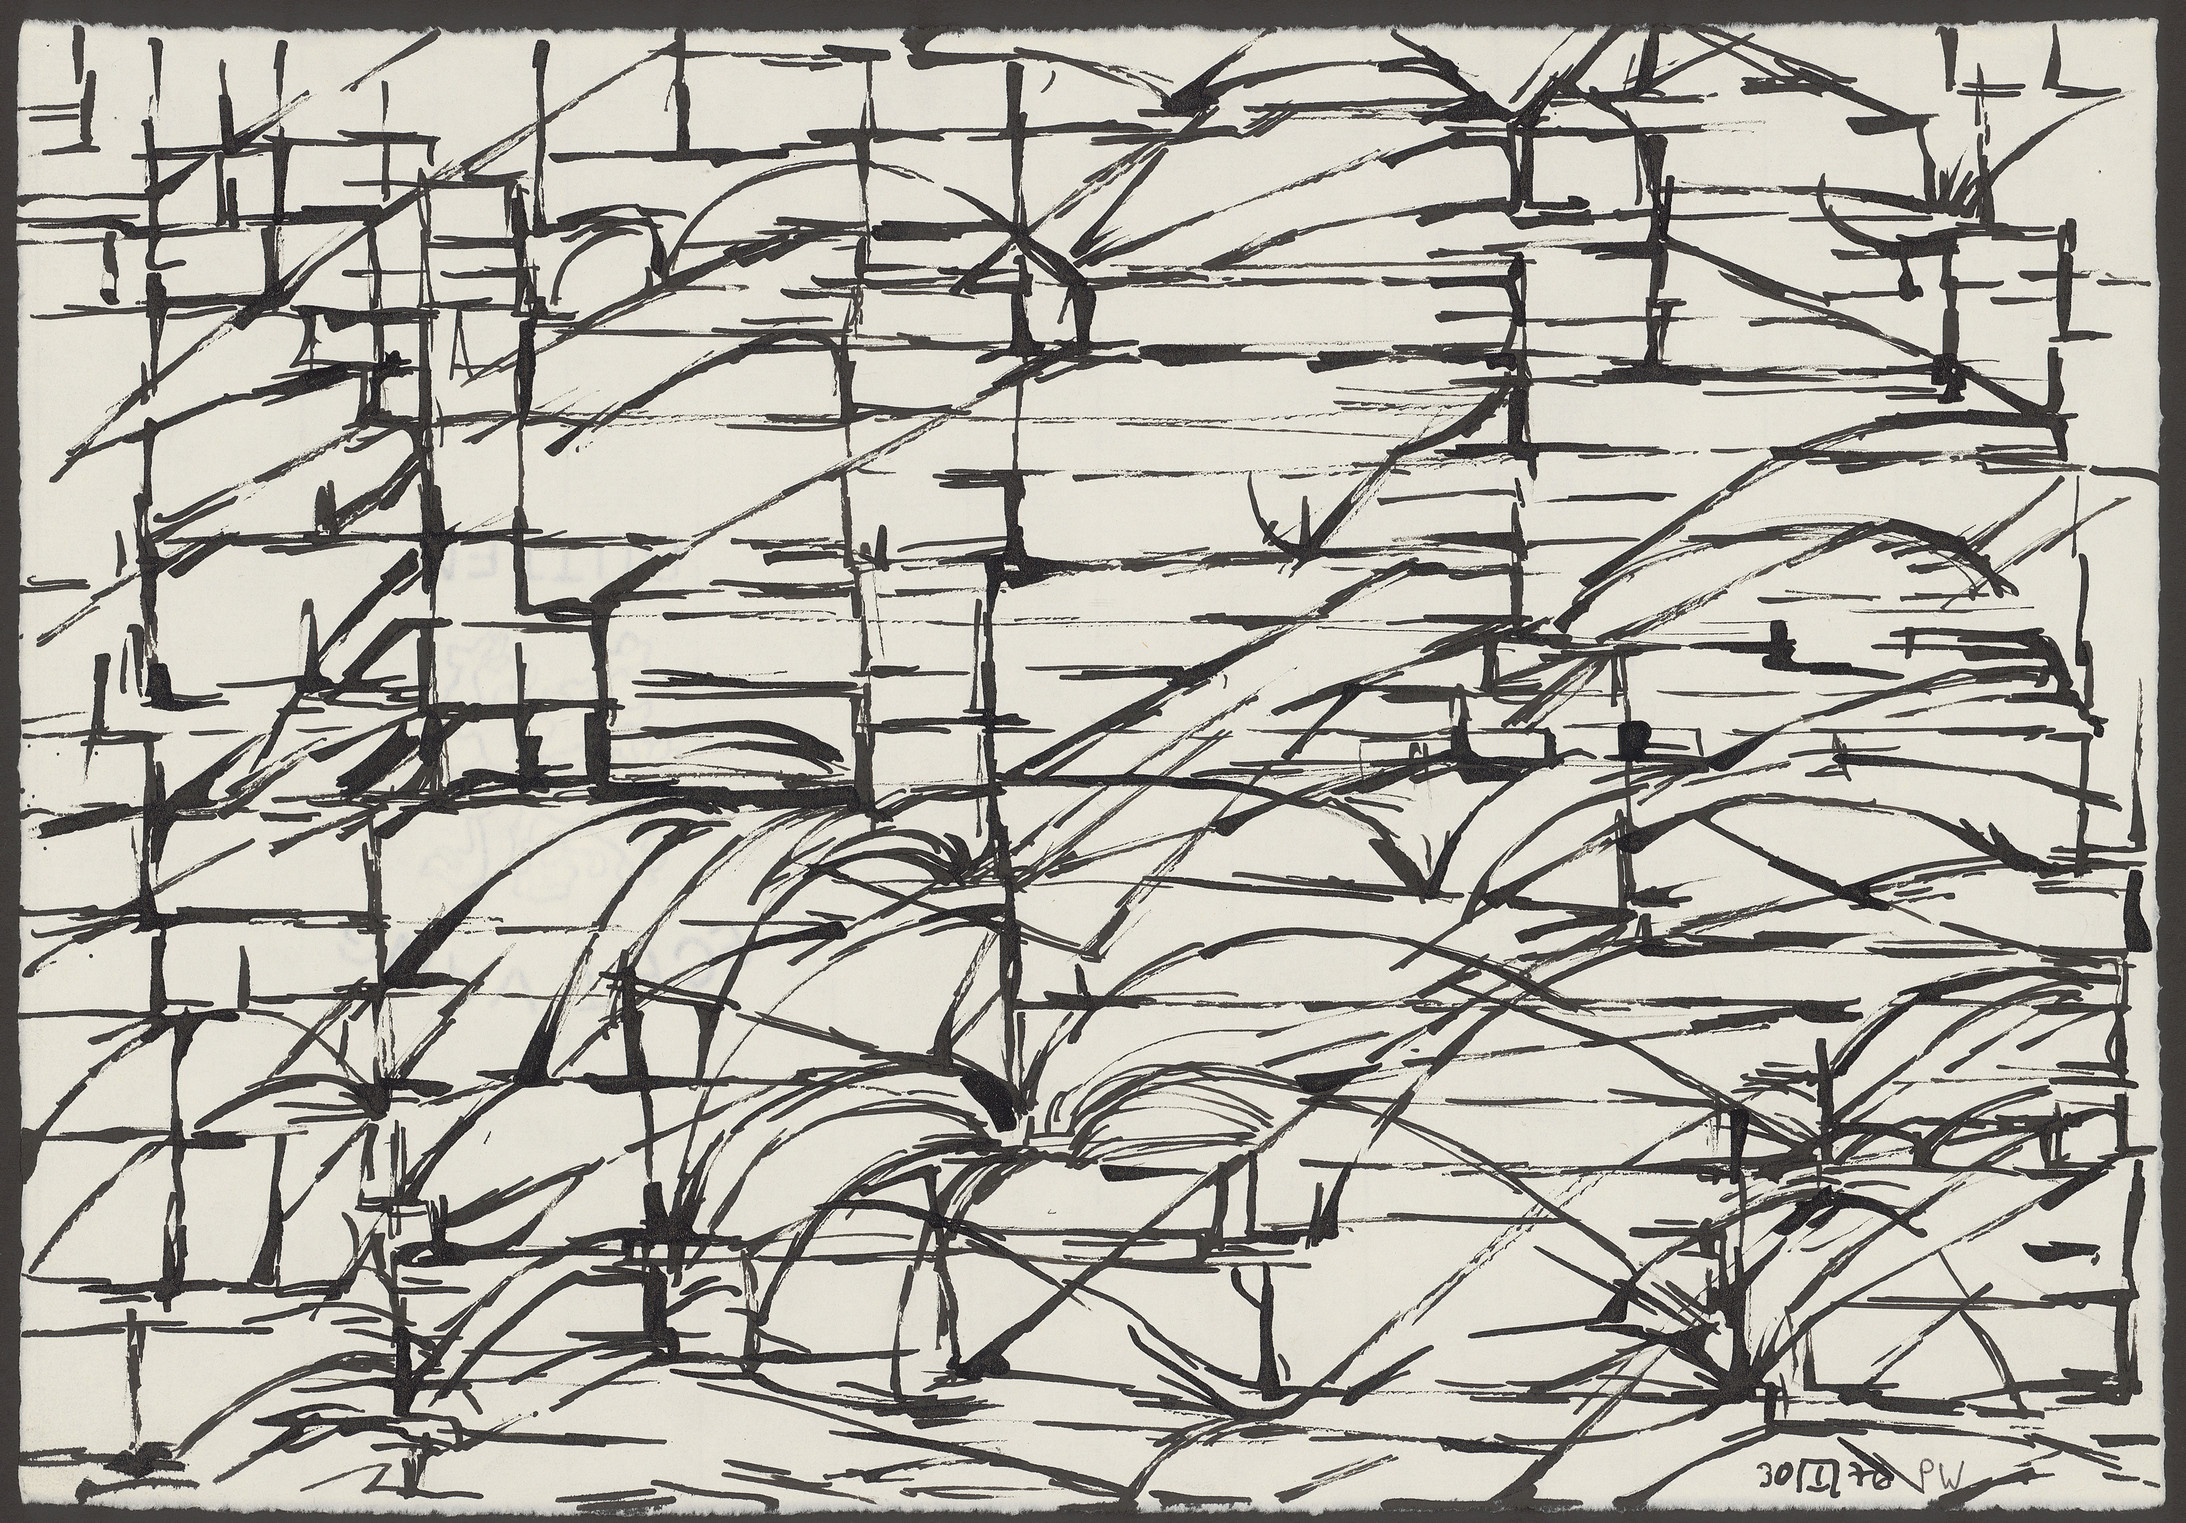 Peter Wechsler: Landschaftliches, 30.I.1976, Rohrfeder, Tusche auf weiss grundiertem Büttenpapier, 29,2 x 42,5 cm; Privatbesitz, © 2016 ProLitteris, Zürich